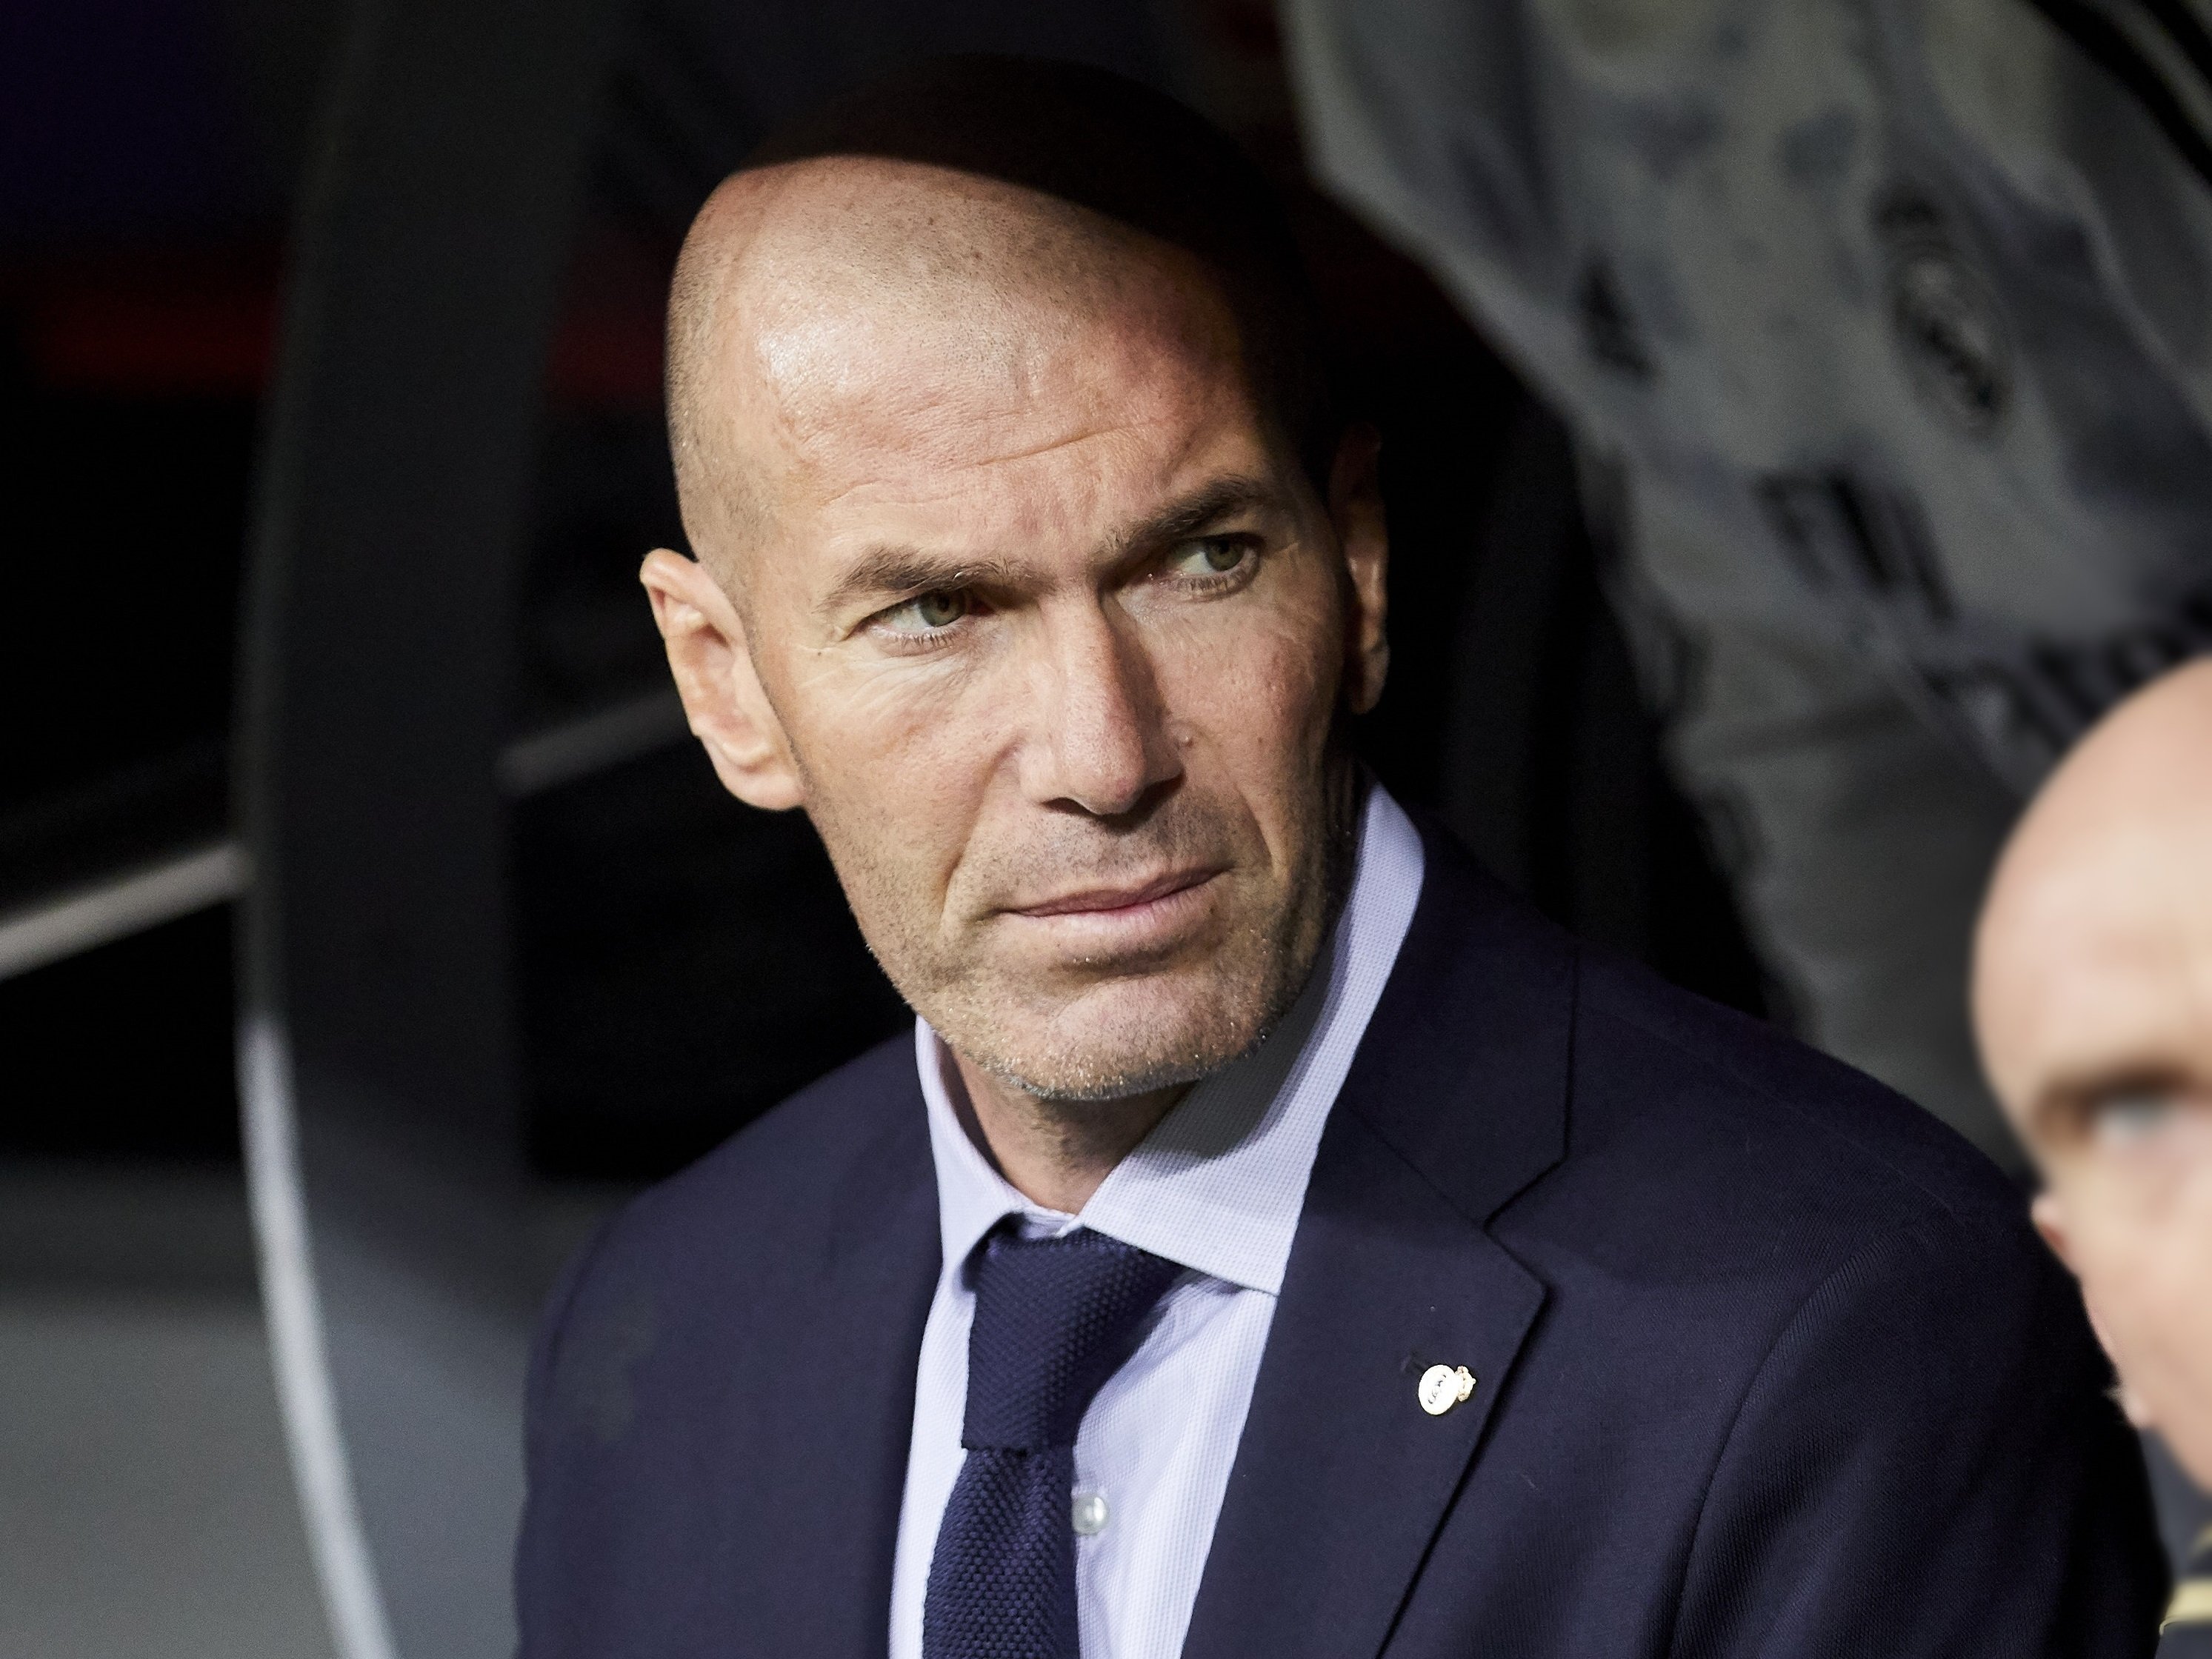 Zidane rebutja ofertes pel súper projecte que l'Aràbia munta a Europa per acabar amb el PSG